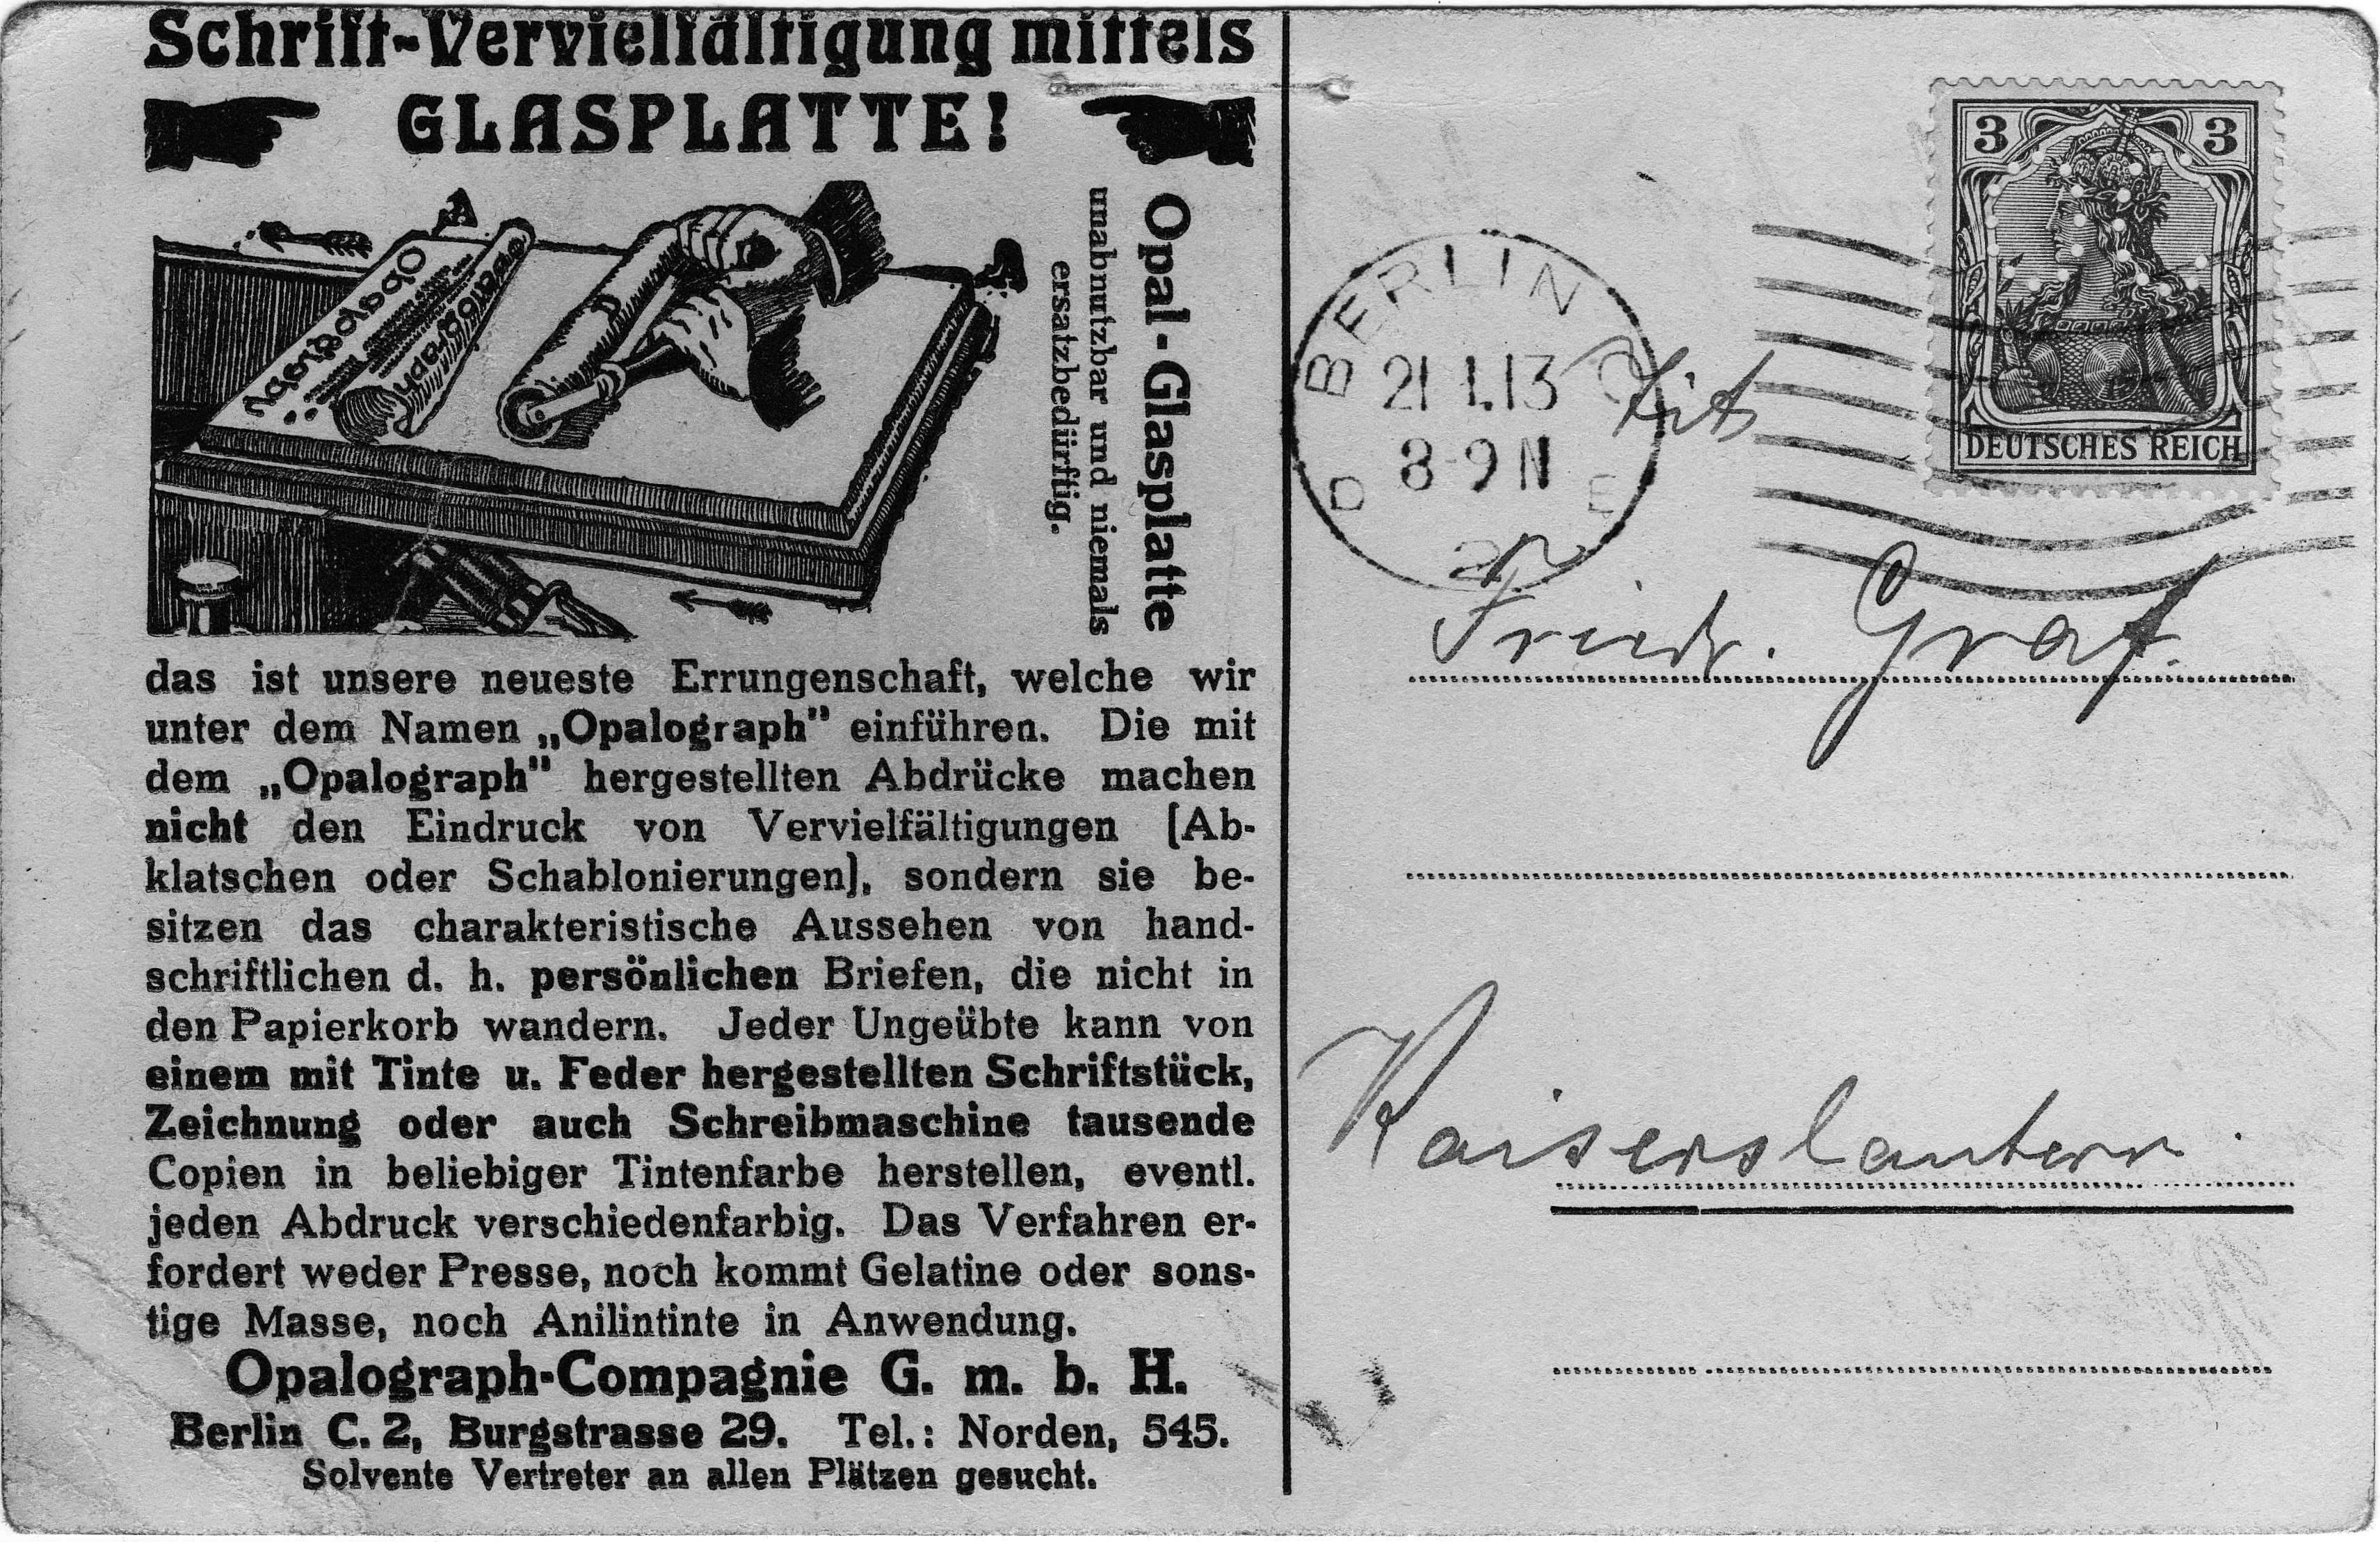 Opalograph Werbeangebot, Postkarte gelaufen 21.1.1913 Privatbesitz